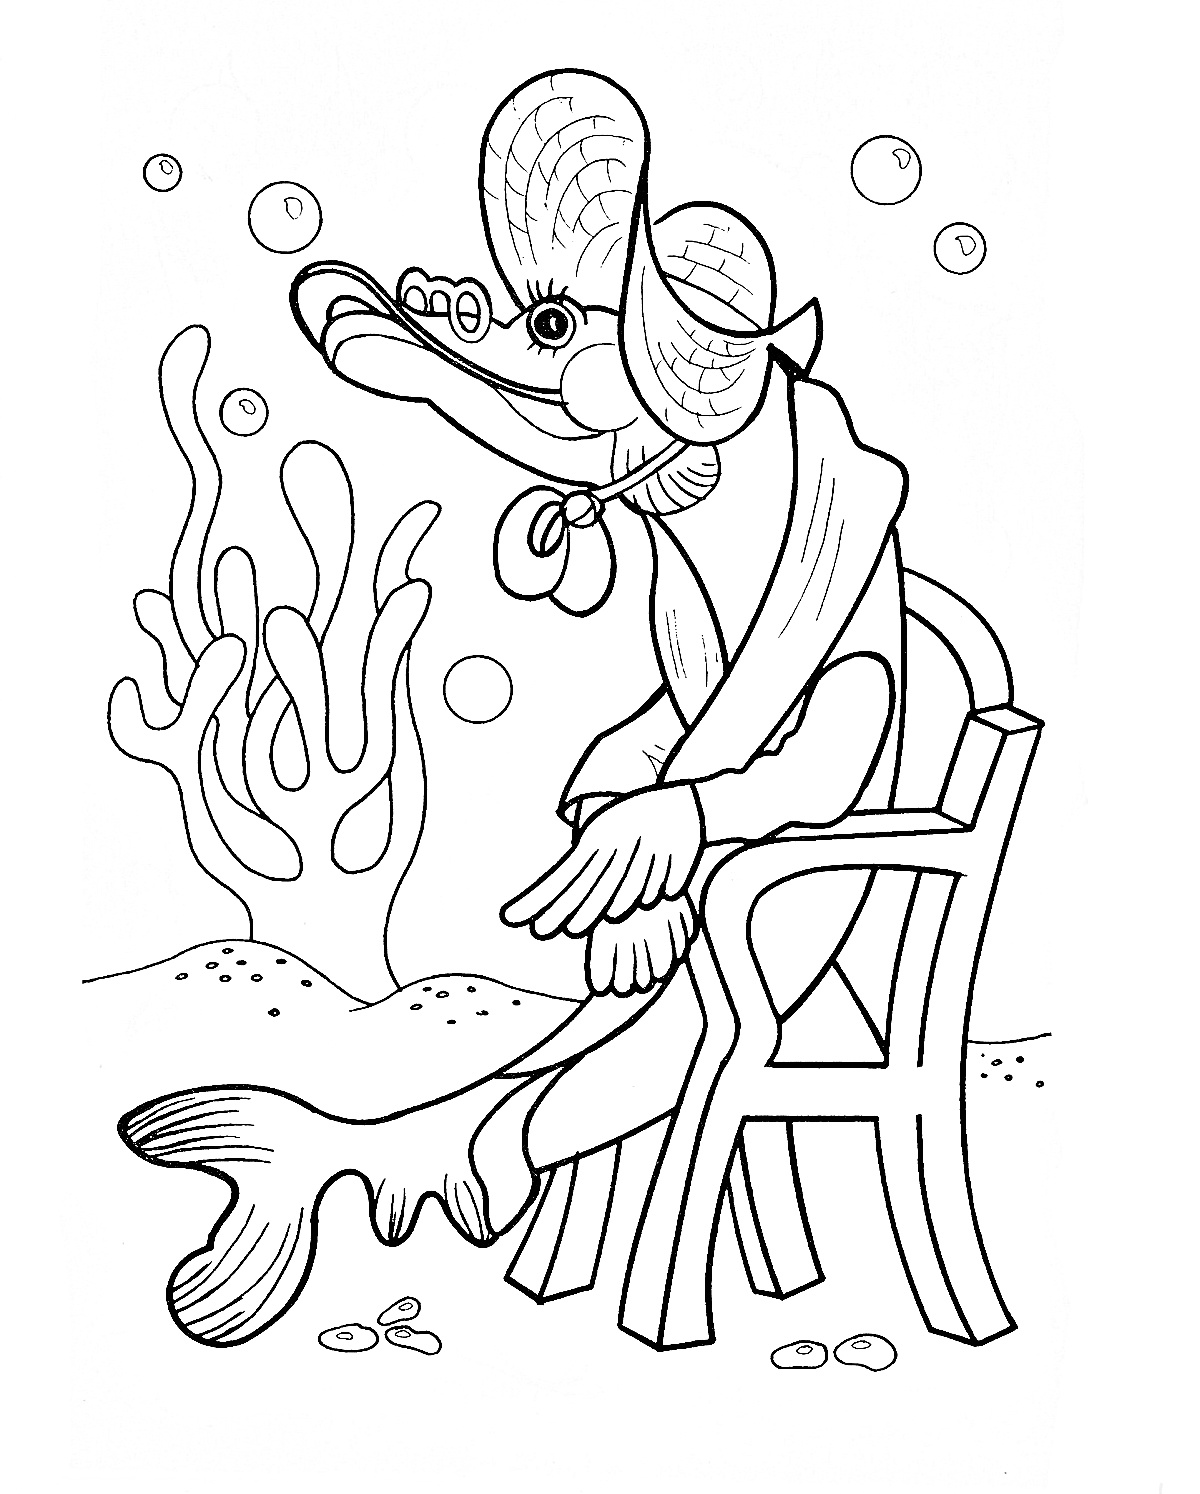 Щука в одежде и шляпе, сидящая на стуле под водой с водорослями и пузырьками